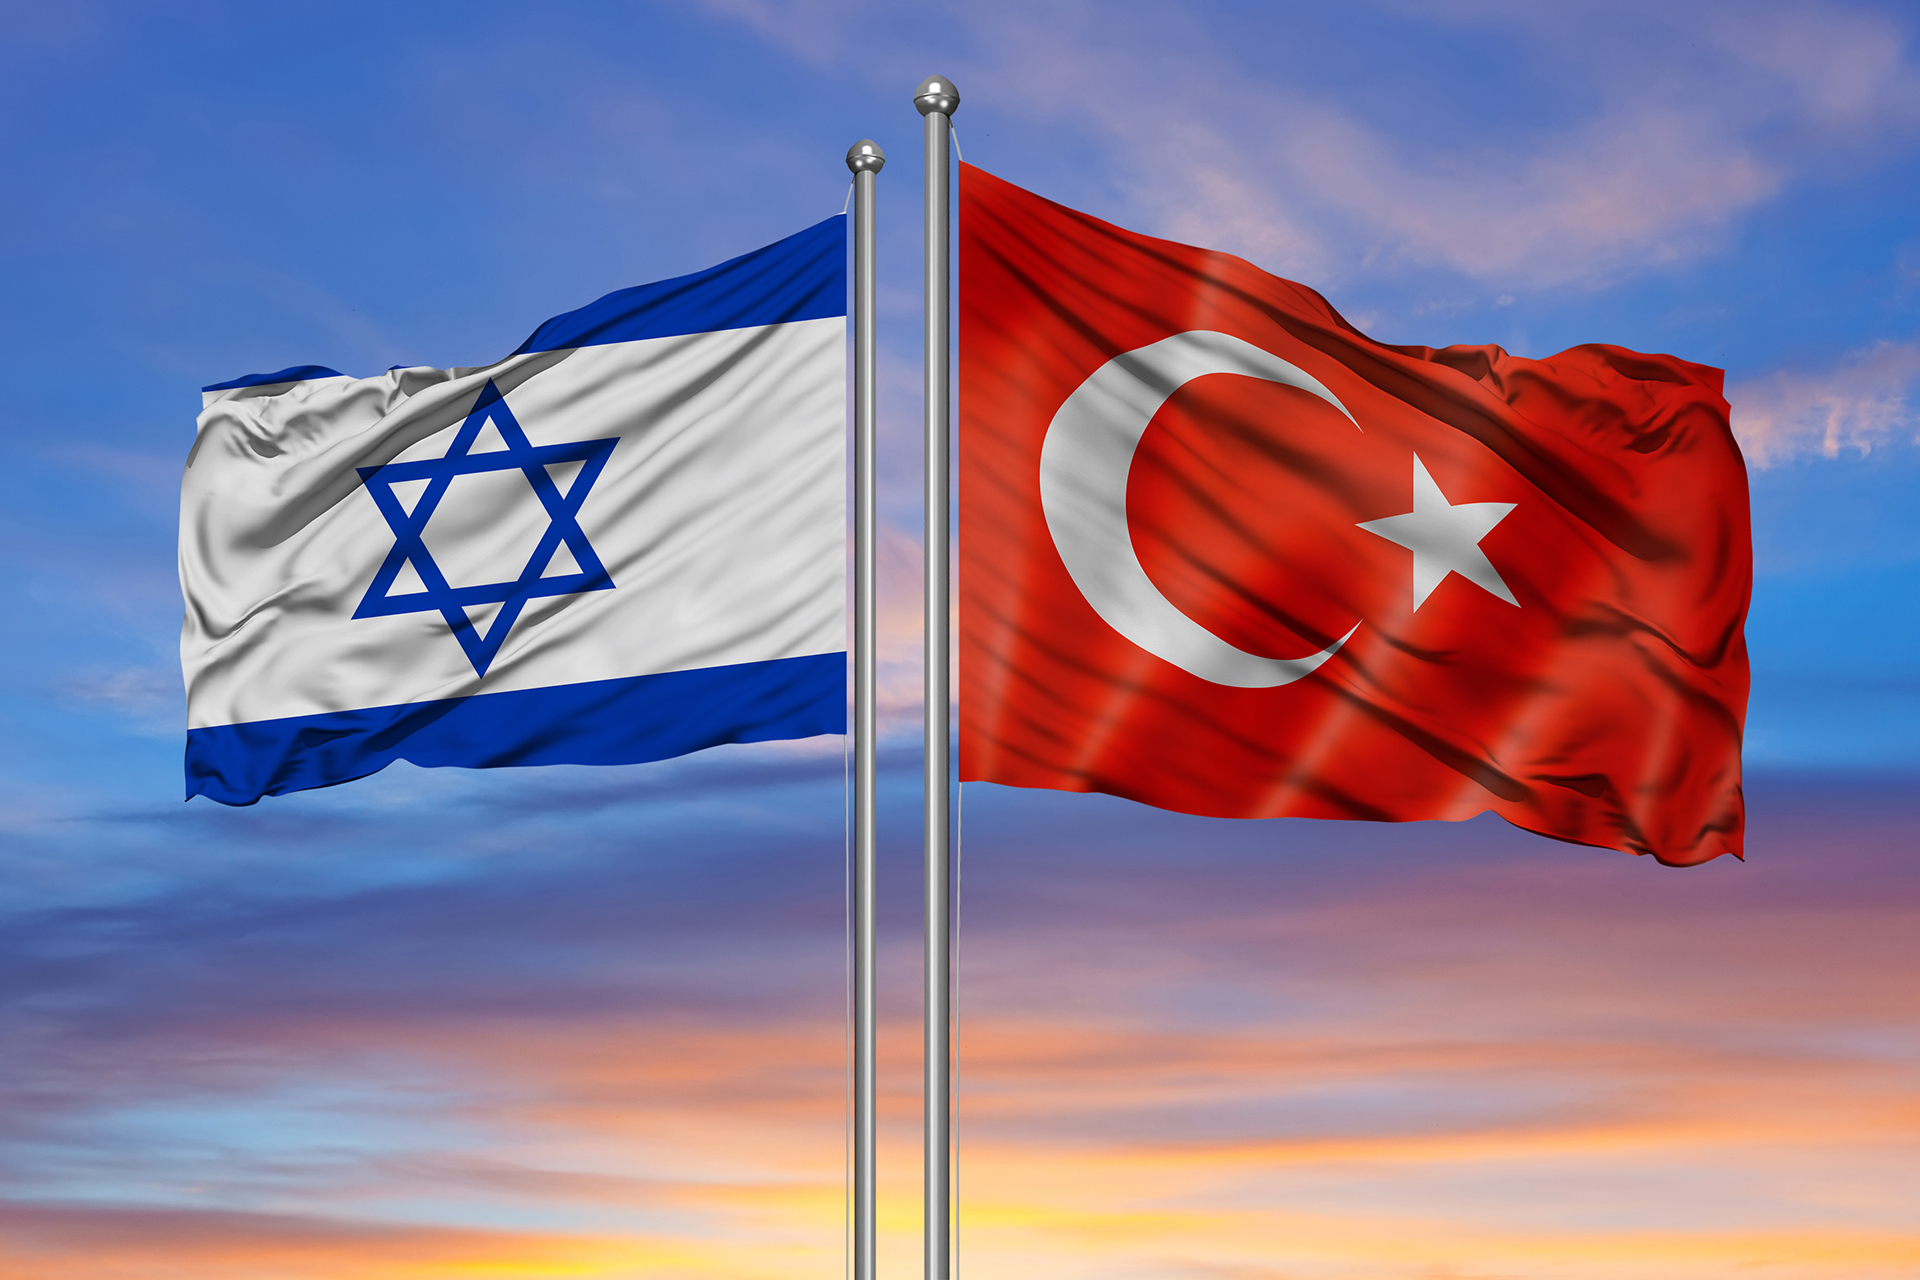 هل في جعبة تركيا أوراق ضغط اقتصادية ضد إسرائيل لم تستخدمها بعد؟ | اقتصاد – البوكس نيوز